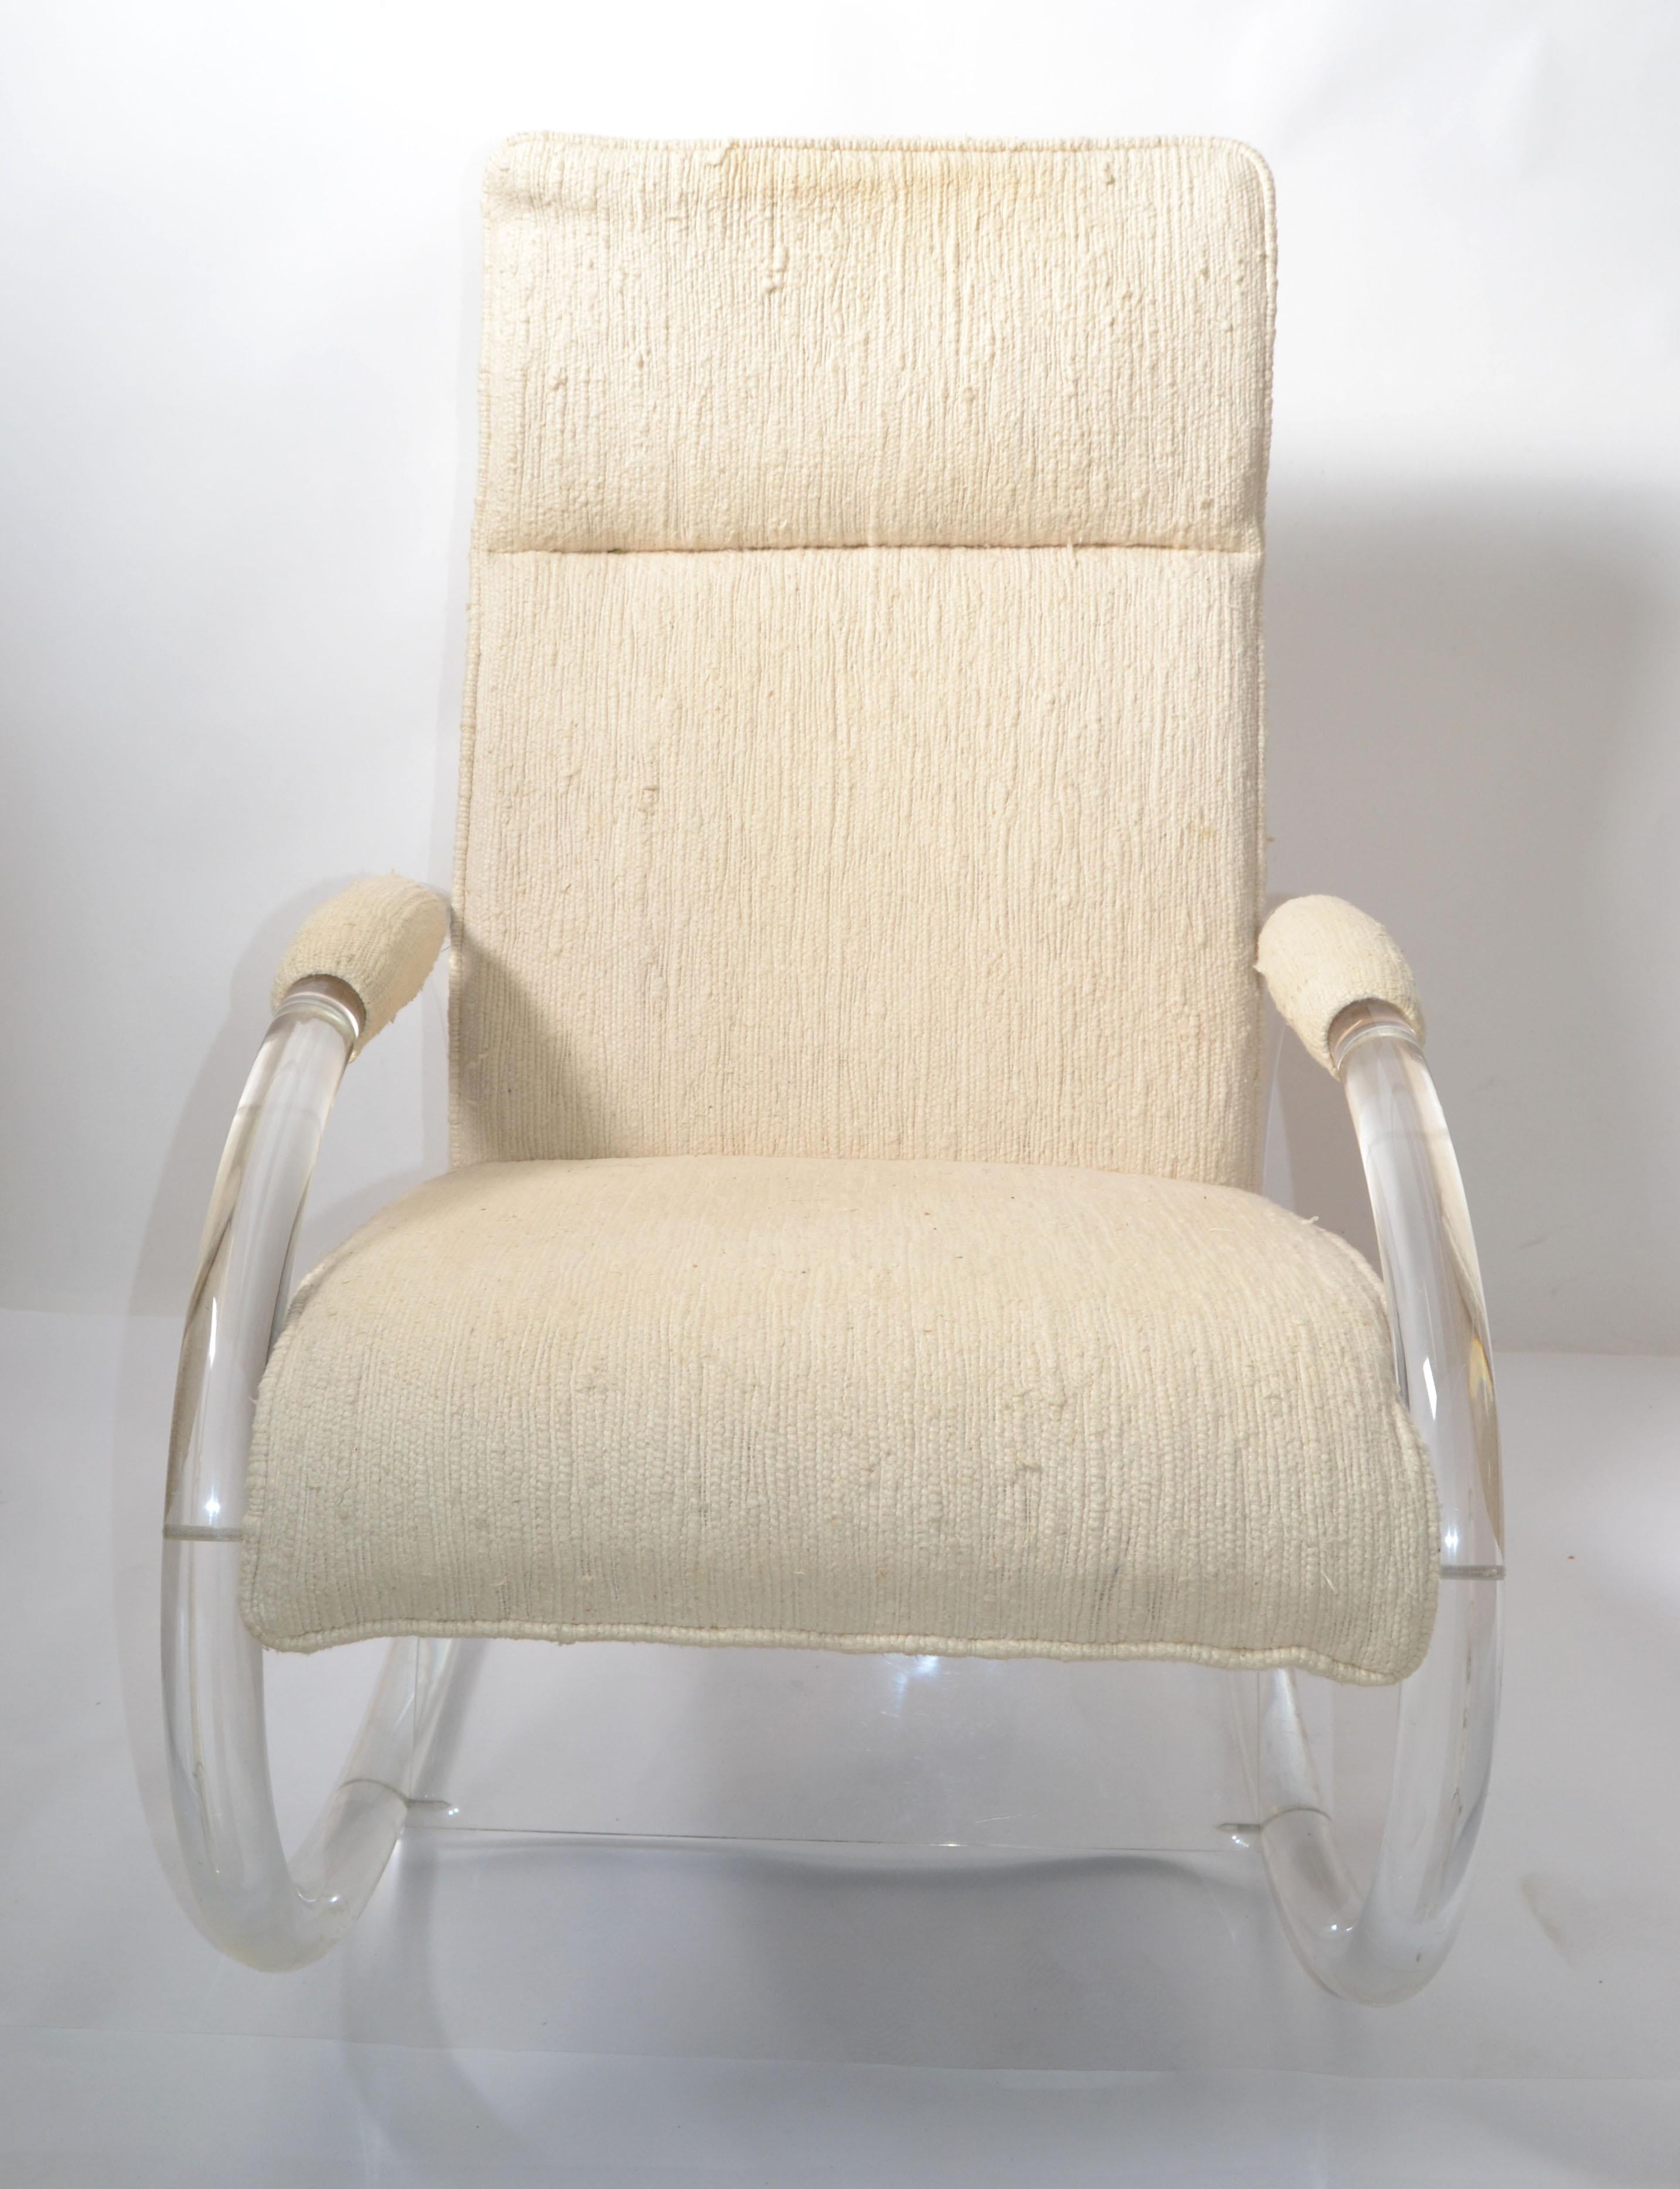 Fauteuil à bascule en bois et en lucite courbé de style Mid-Century Modern, conçu par Charles Hille Jones dans les années 1970 et fabriqué par Hill Manufacturing Corporation.
La chaise longue est recouverte de coton haïtien beige d'origine.
Marque